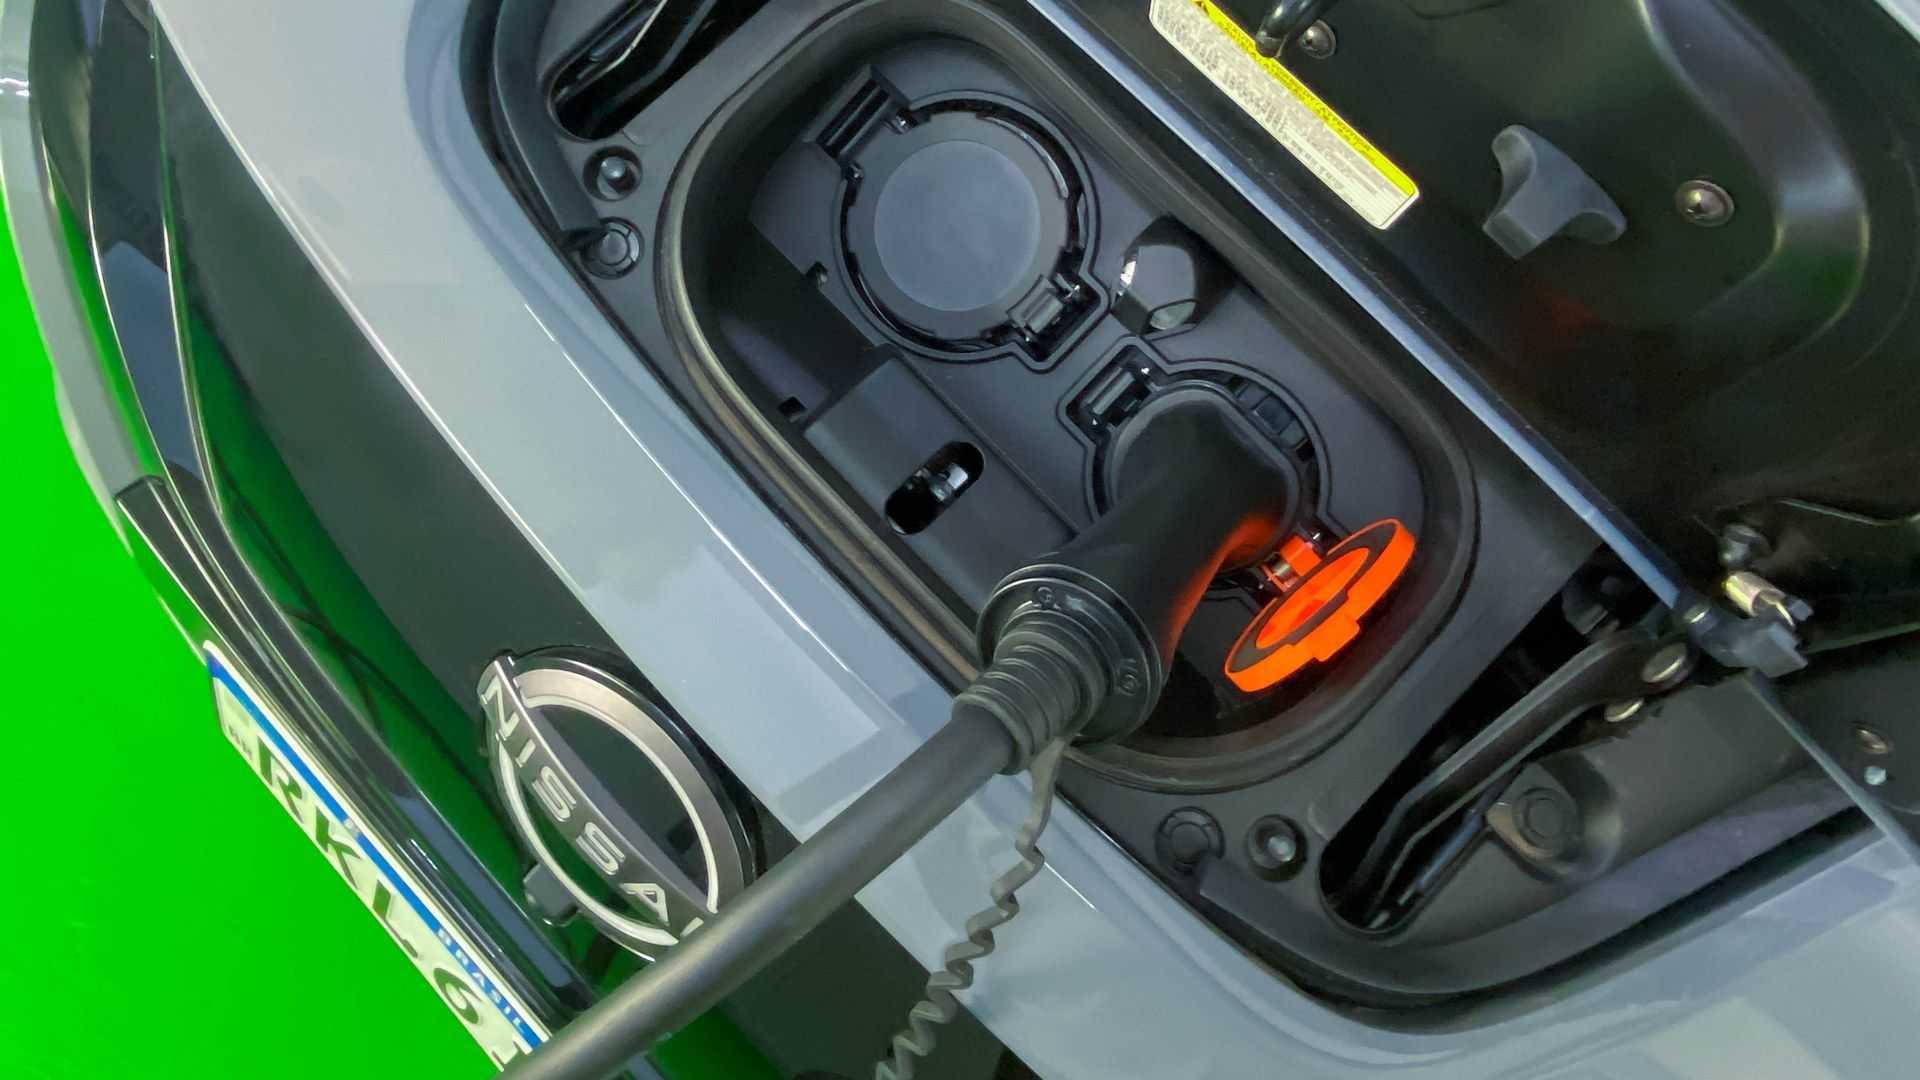 baterias de carros elétricos: quanto tempo elas duram na vida real?